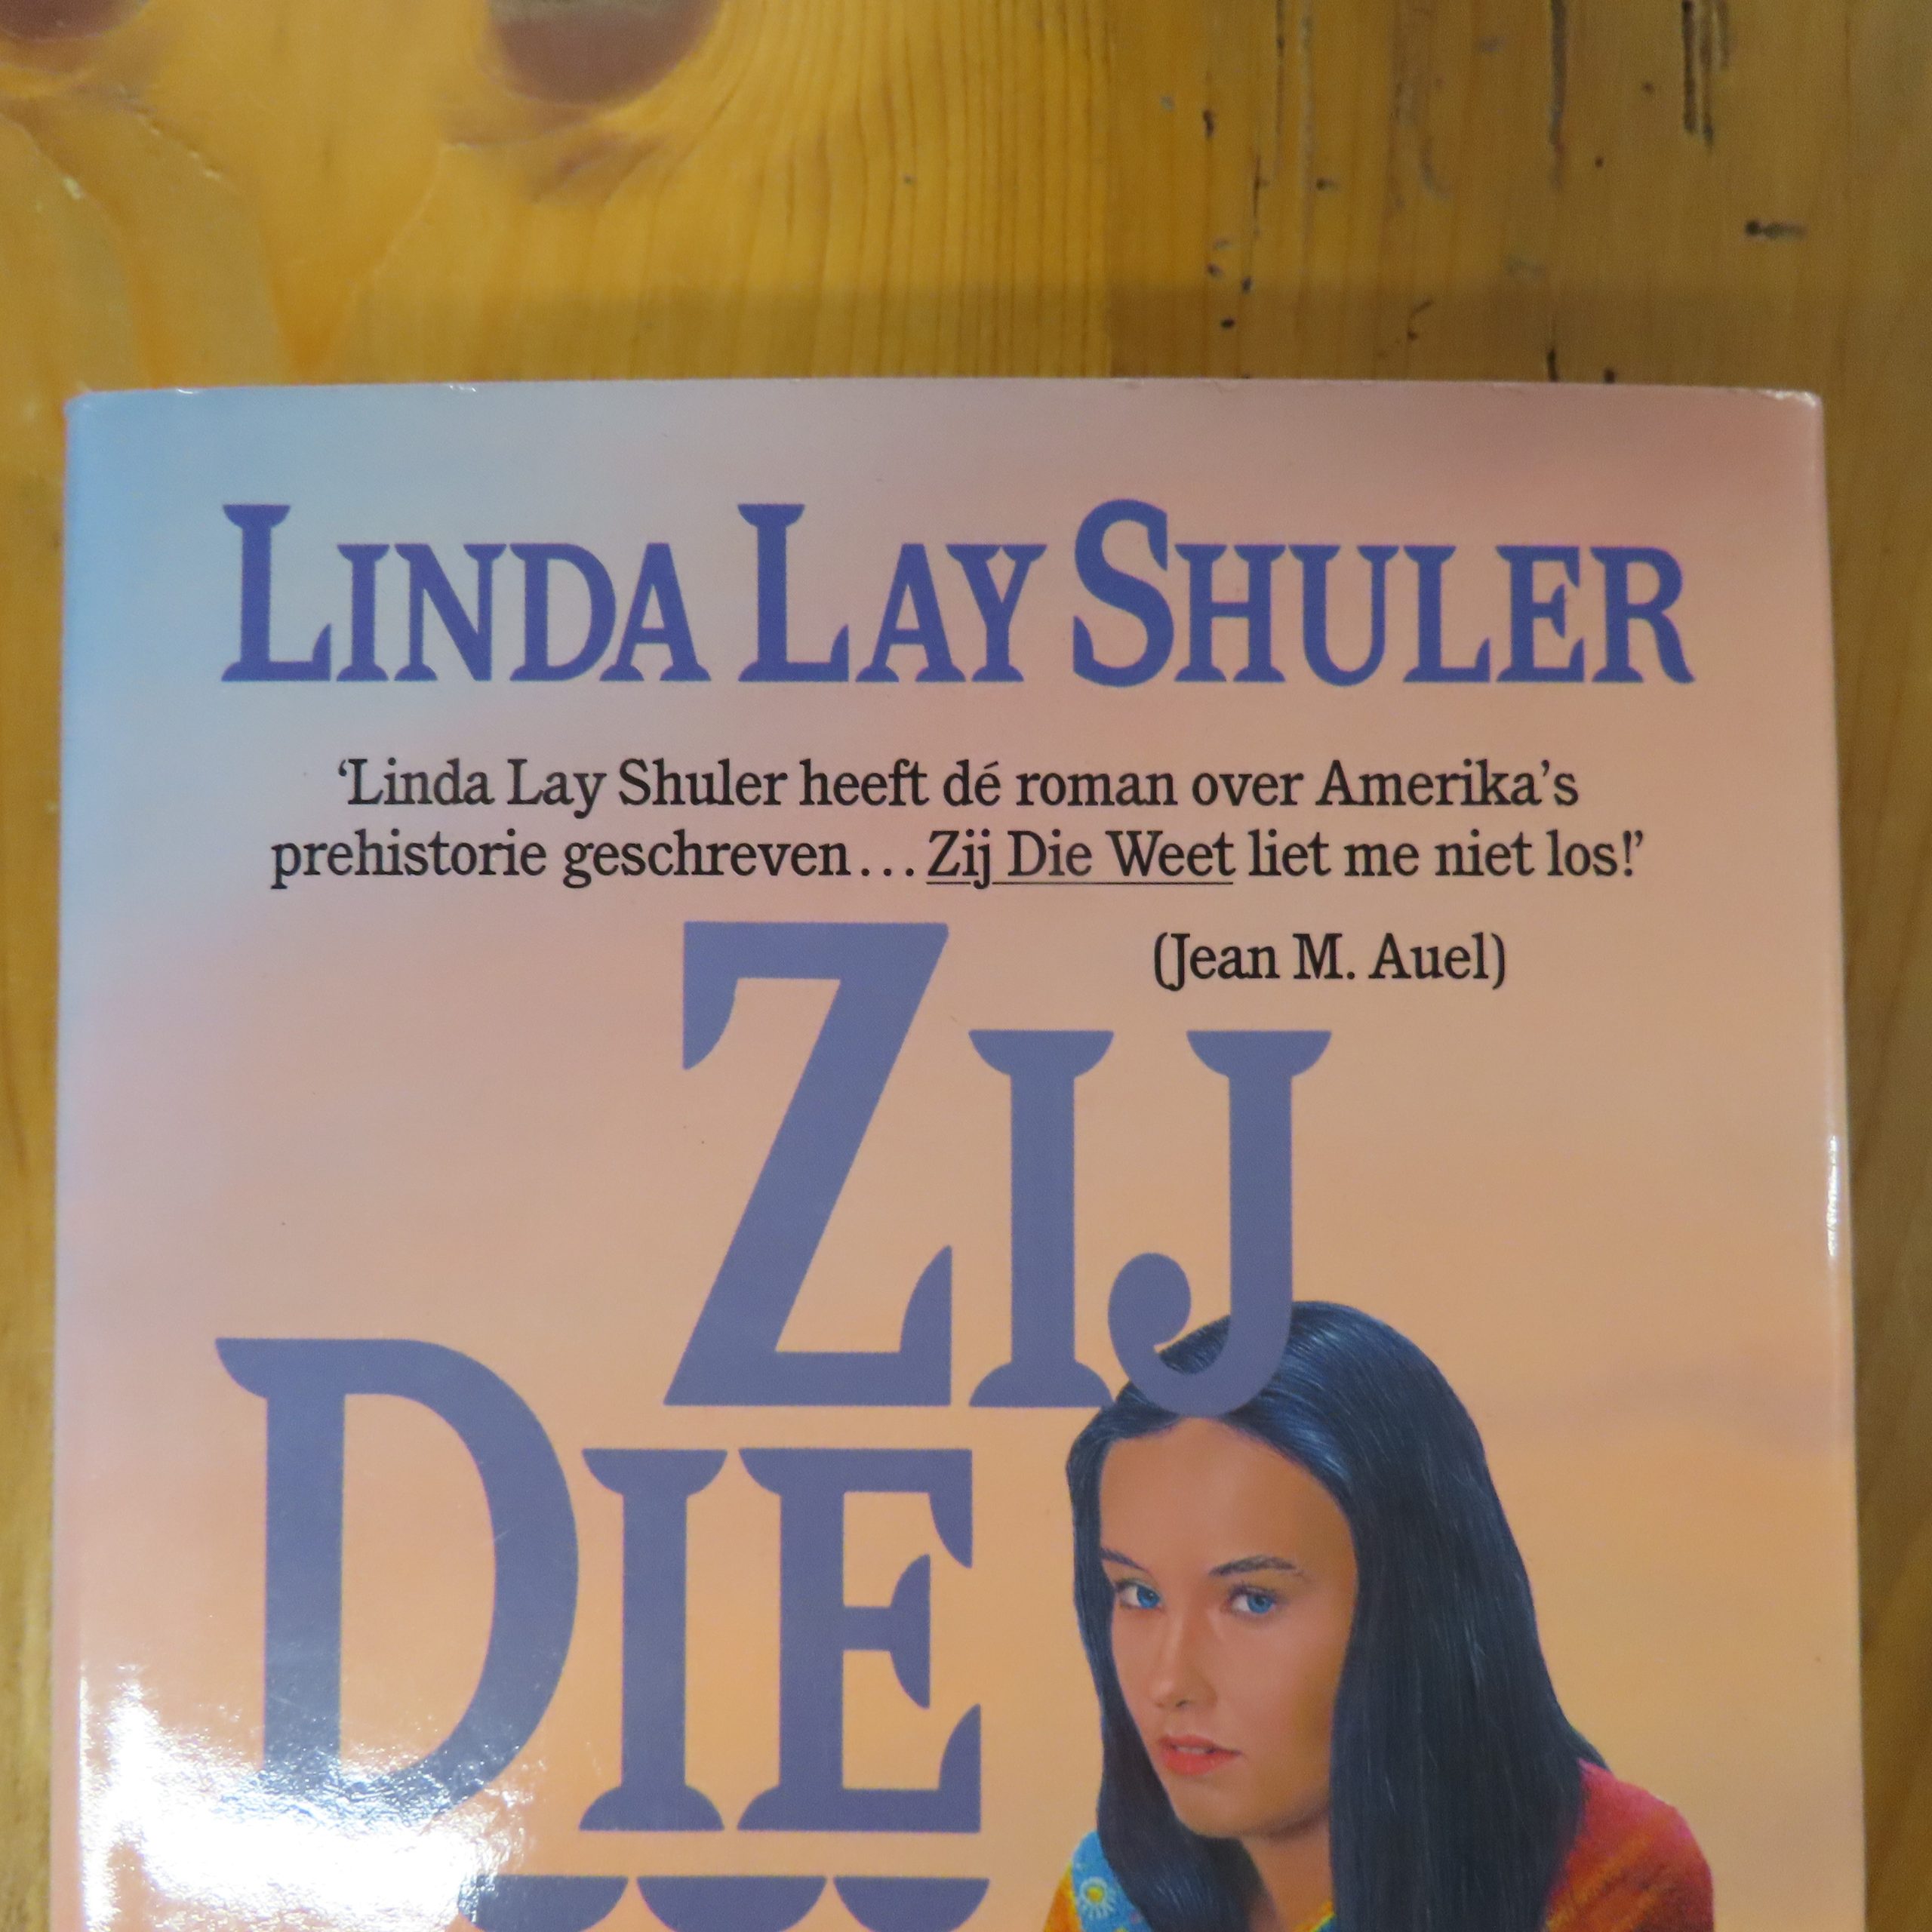 Boek “Zij die weet” van Linda Lay Shuler